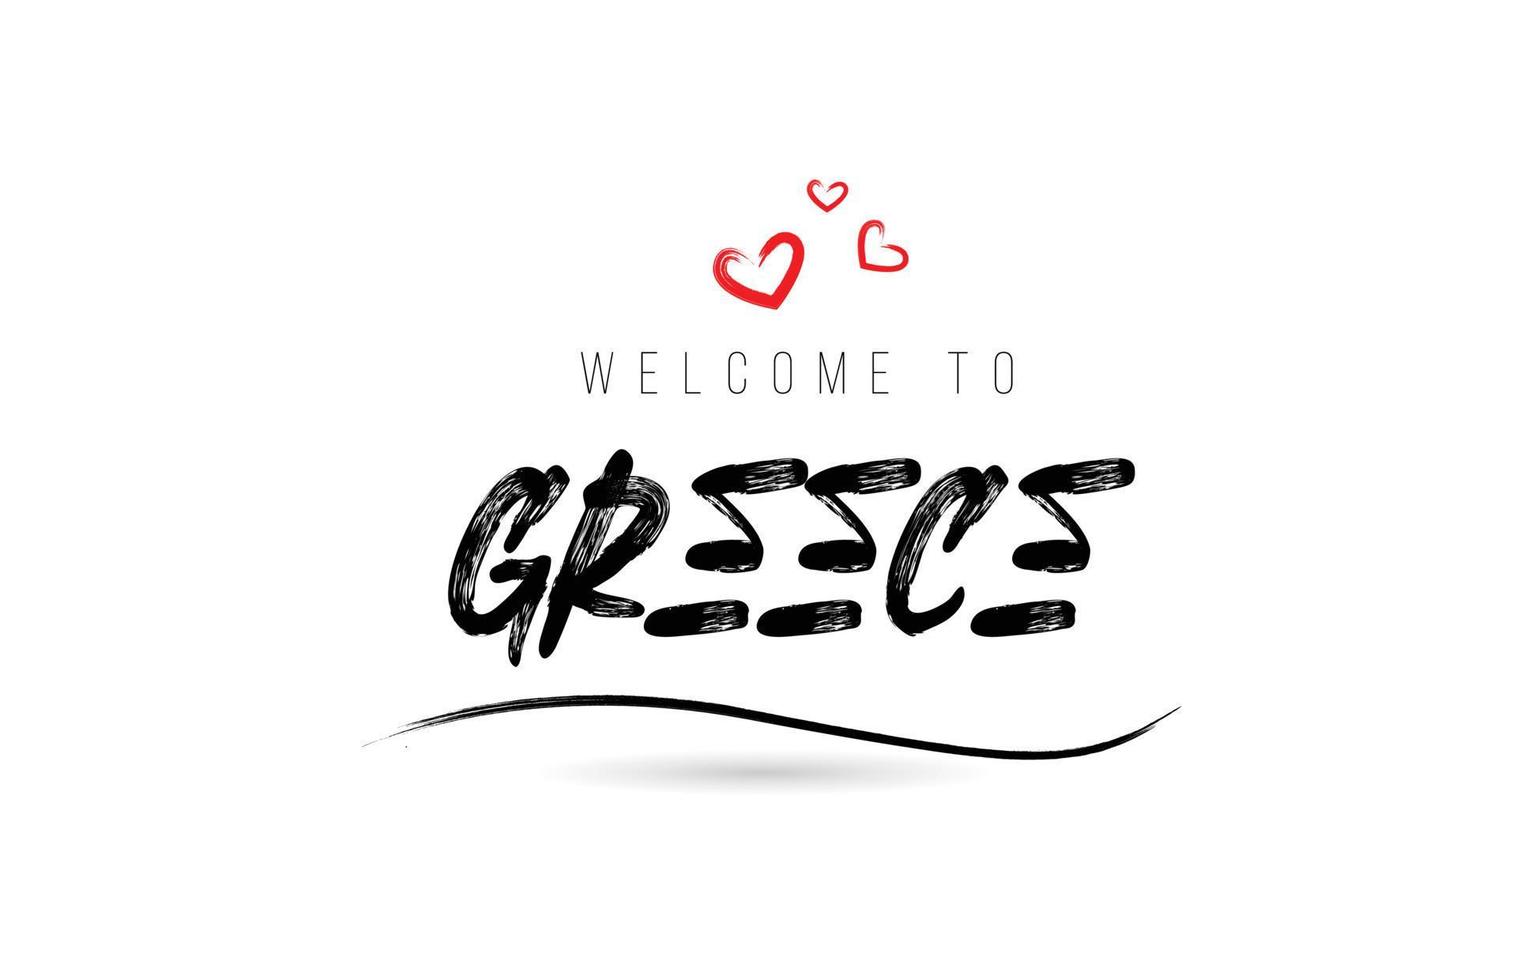 bem-vindo à tipografia de texto do país grécia com coração de amor vermelho e nome preto vetor